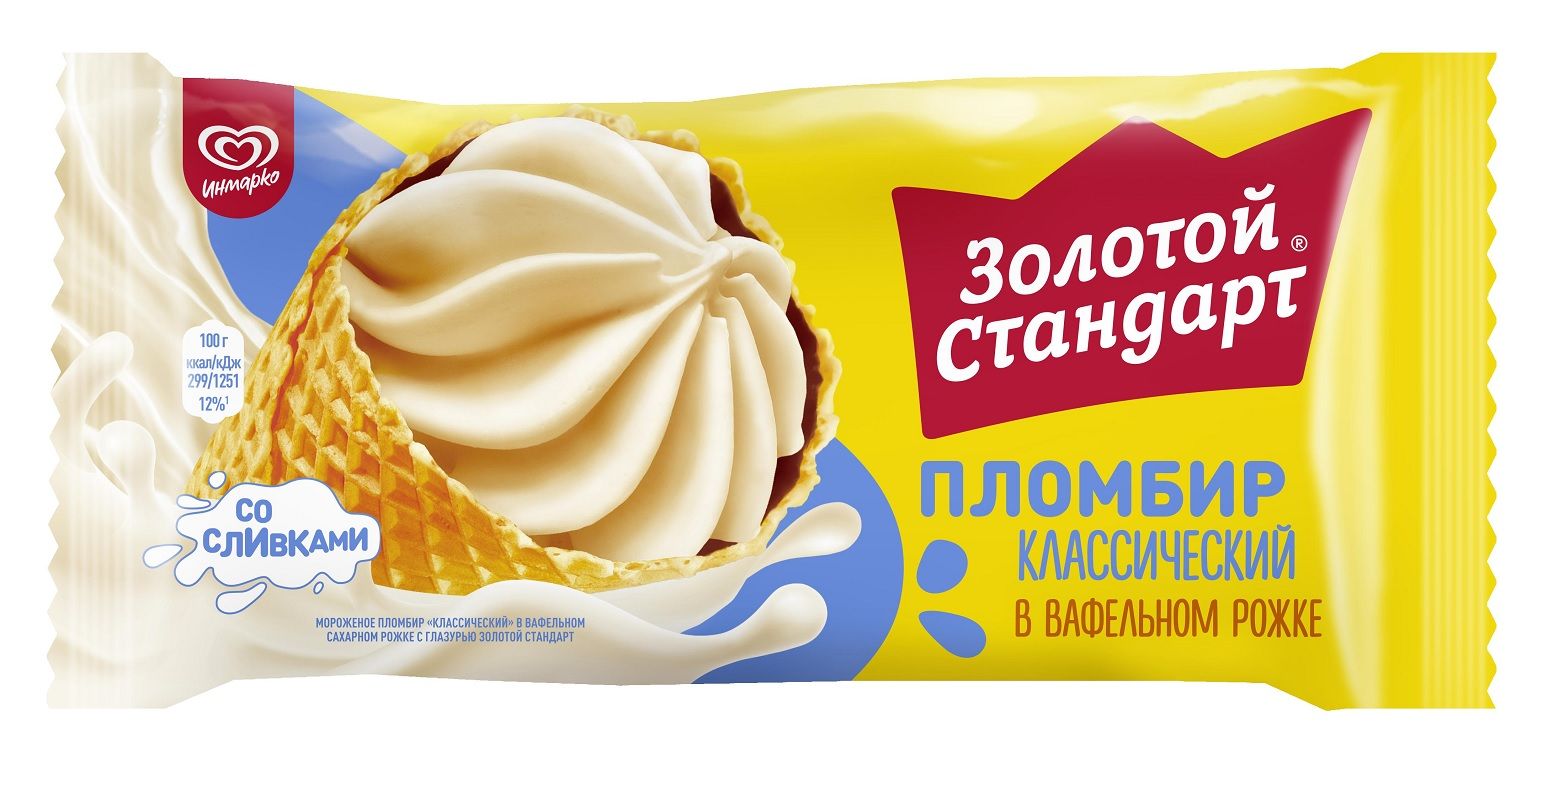 Мороженое пломбир большой рожок золотой стандарт 100г